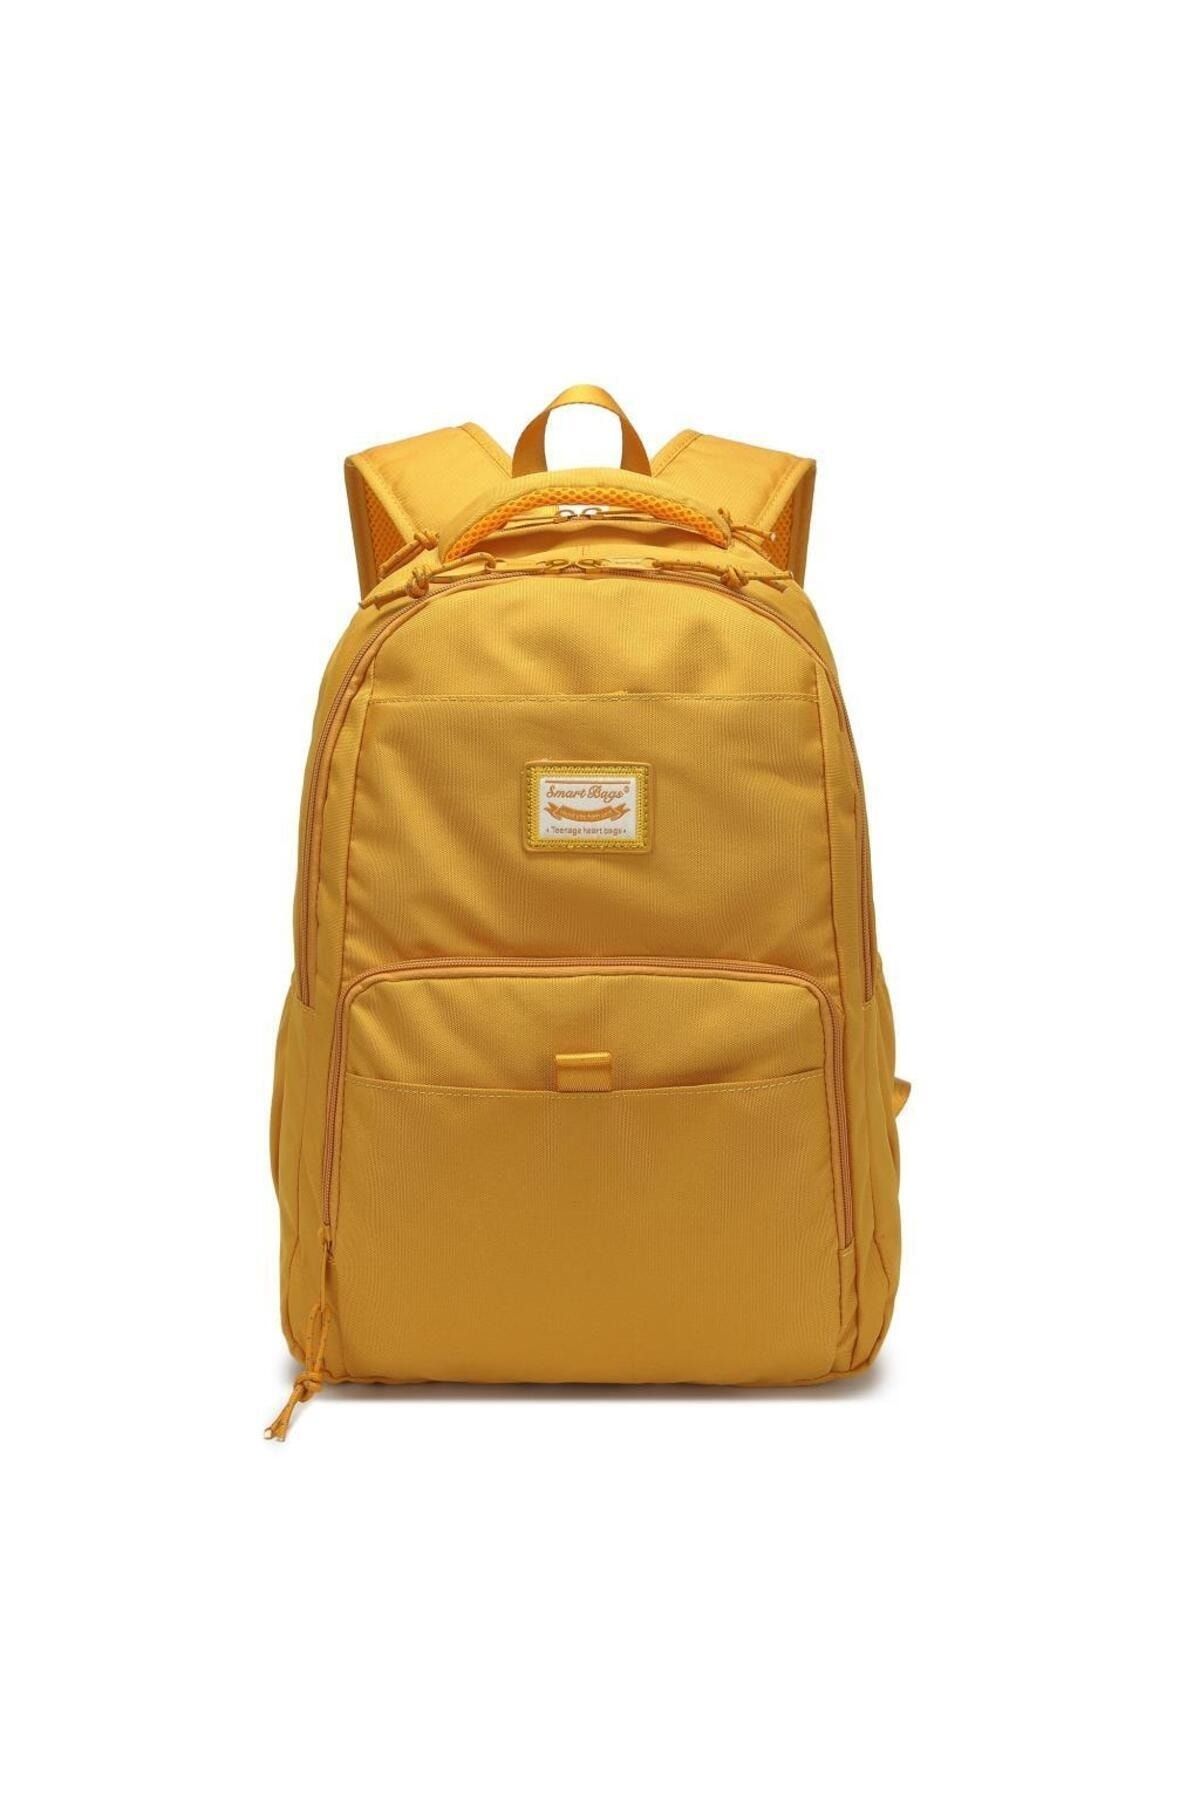 Smart Bags Sırt Çantası Okul Boyu Laptop Gözlü 3159